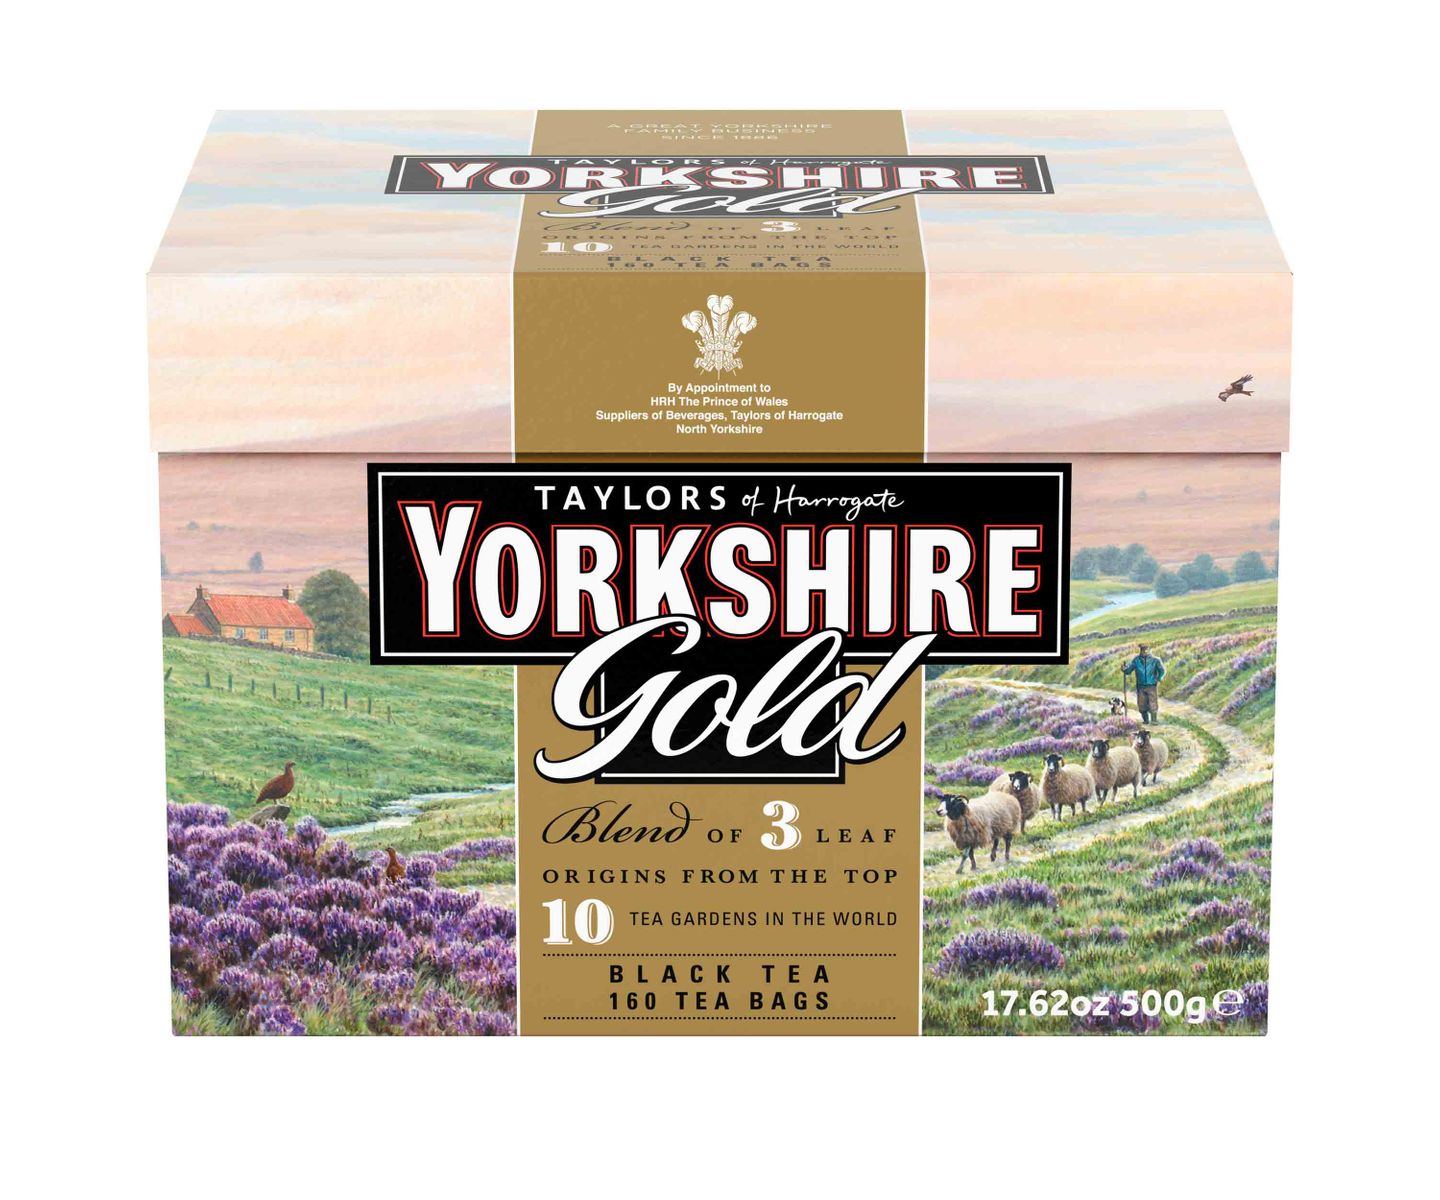 楽天Walmart 楽天市場店[RDY] [送料無料] Taylors of Harrogate ヨークシャー ゴールドティー ティーバッグ 160個入り [楽天海外通販] | Taylors of Harrogate Yorkshire Gold Black Tea, Tea Bags, 160 Ct